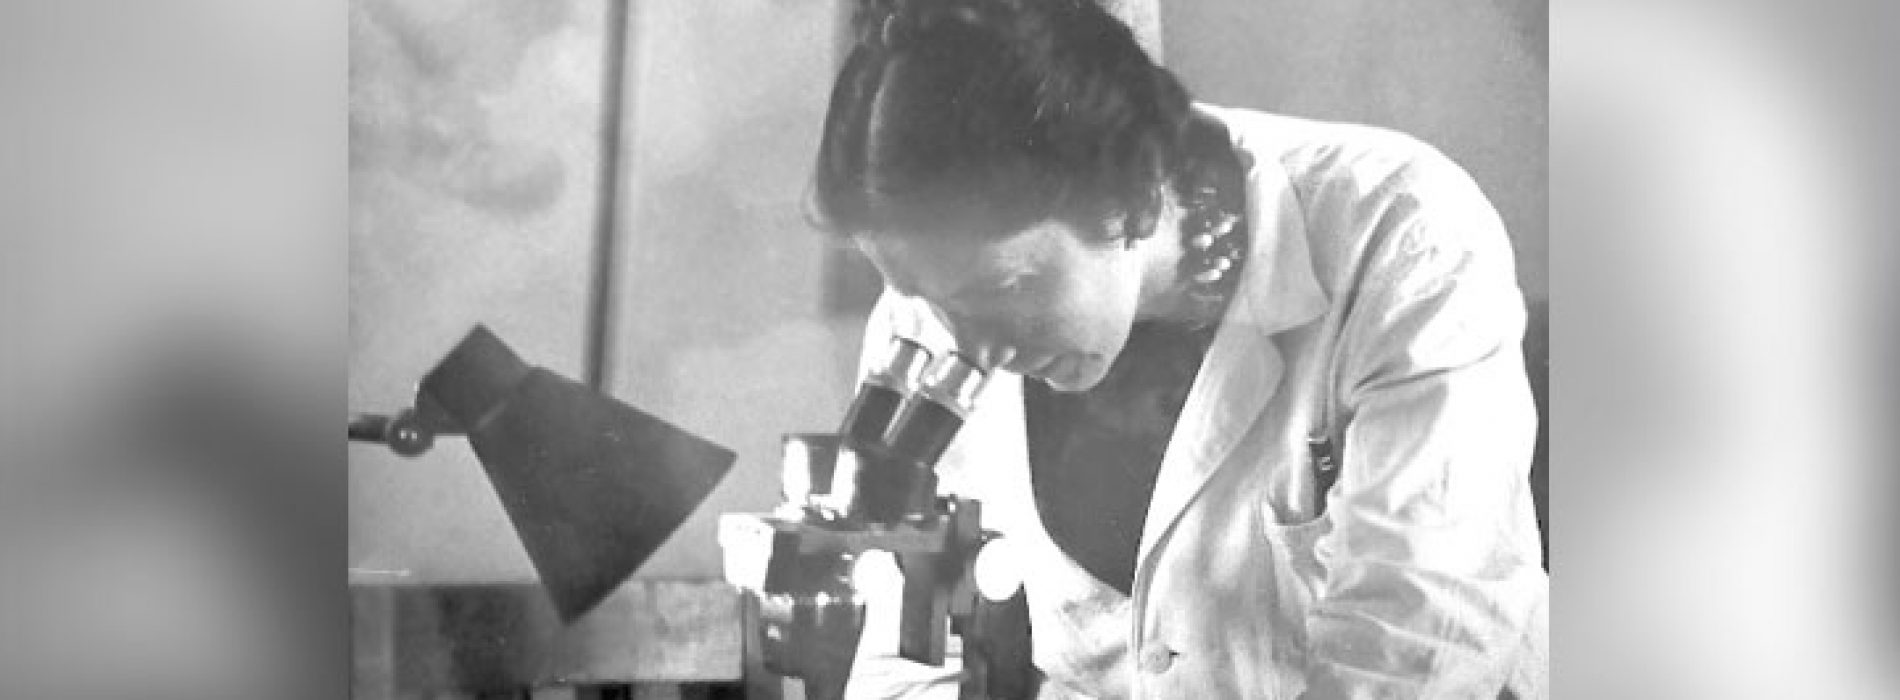 Hilda Cid: La primera chilena en doctorarse en Ciencias Exactas y cuyos logros han caído en el olvido